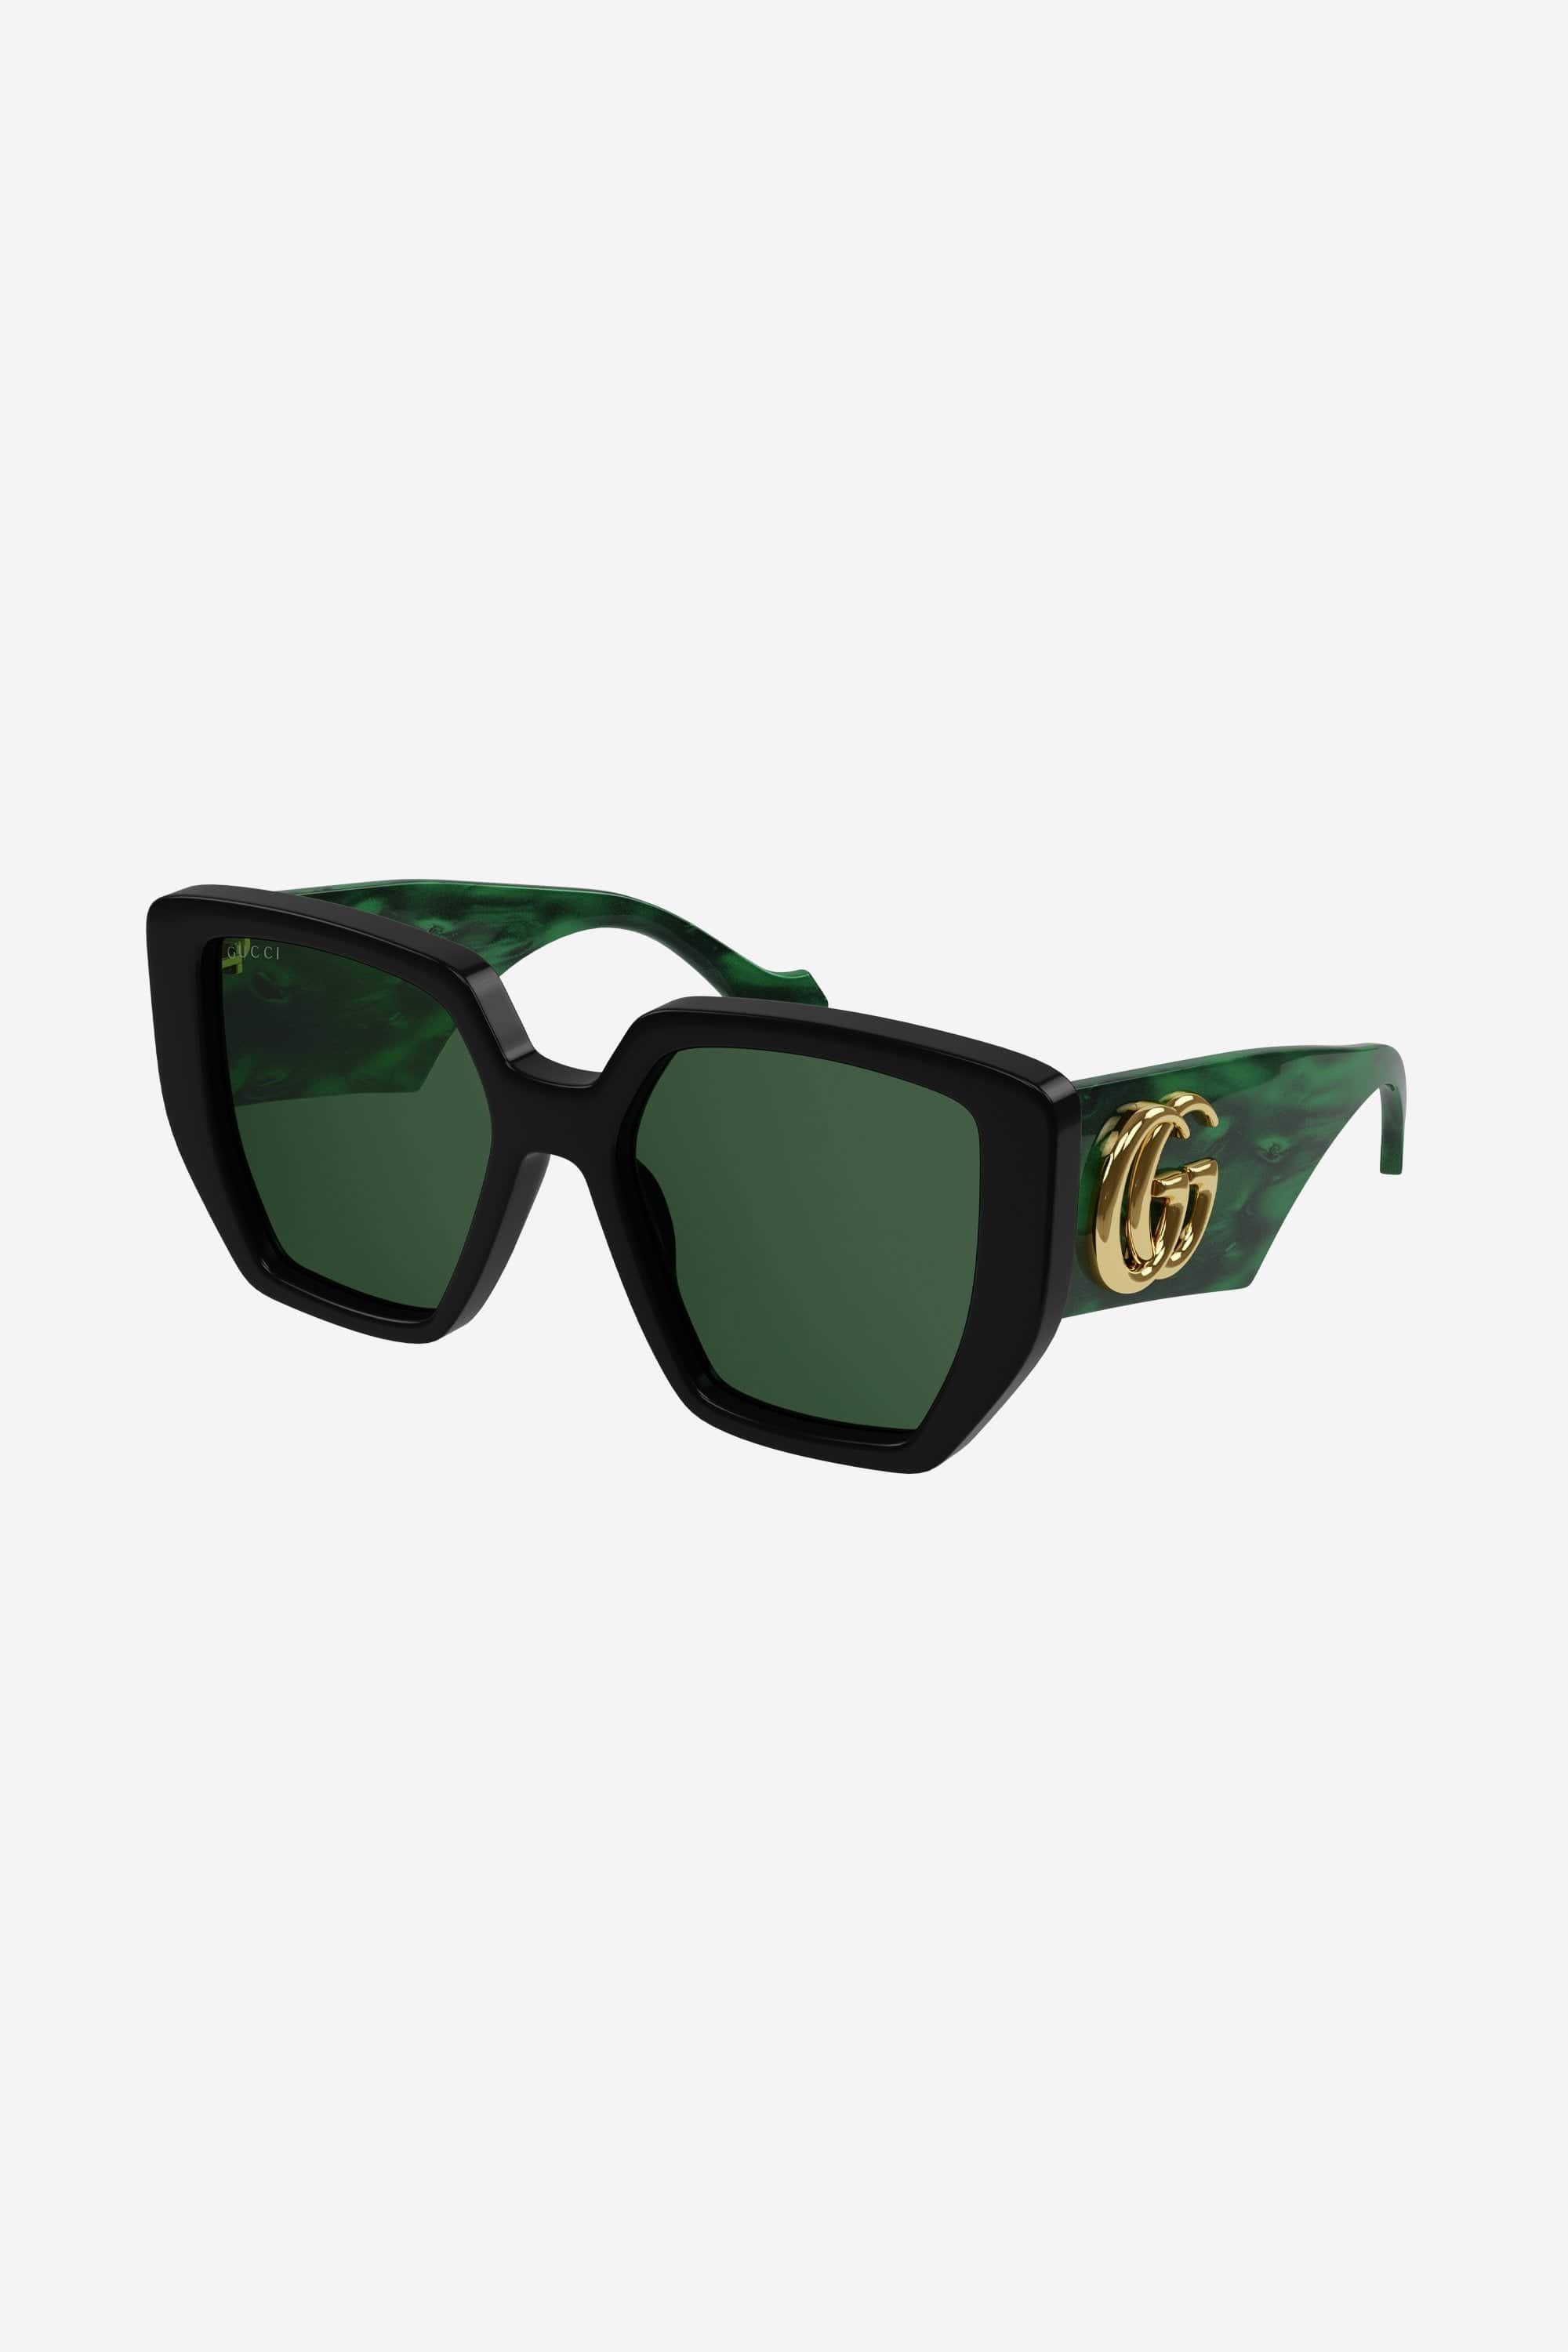 Gucci GG0956S gafas de sol oversize en negro y verde con logo